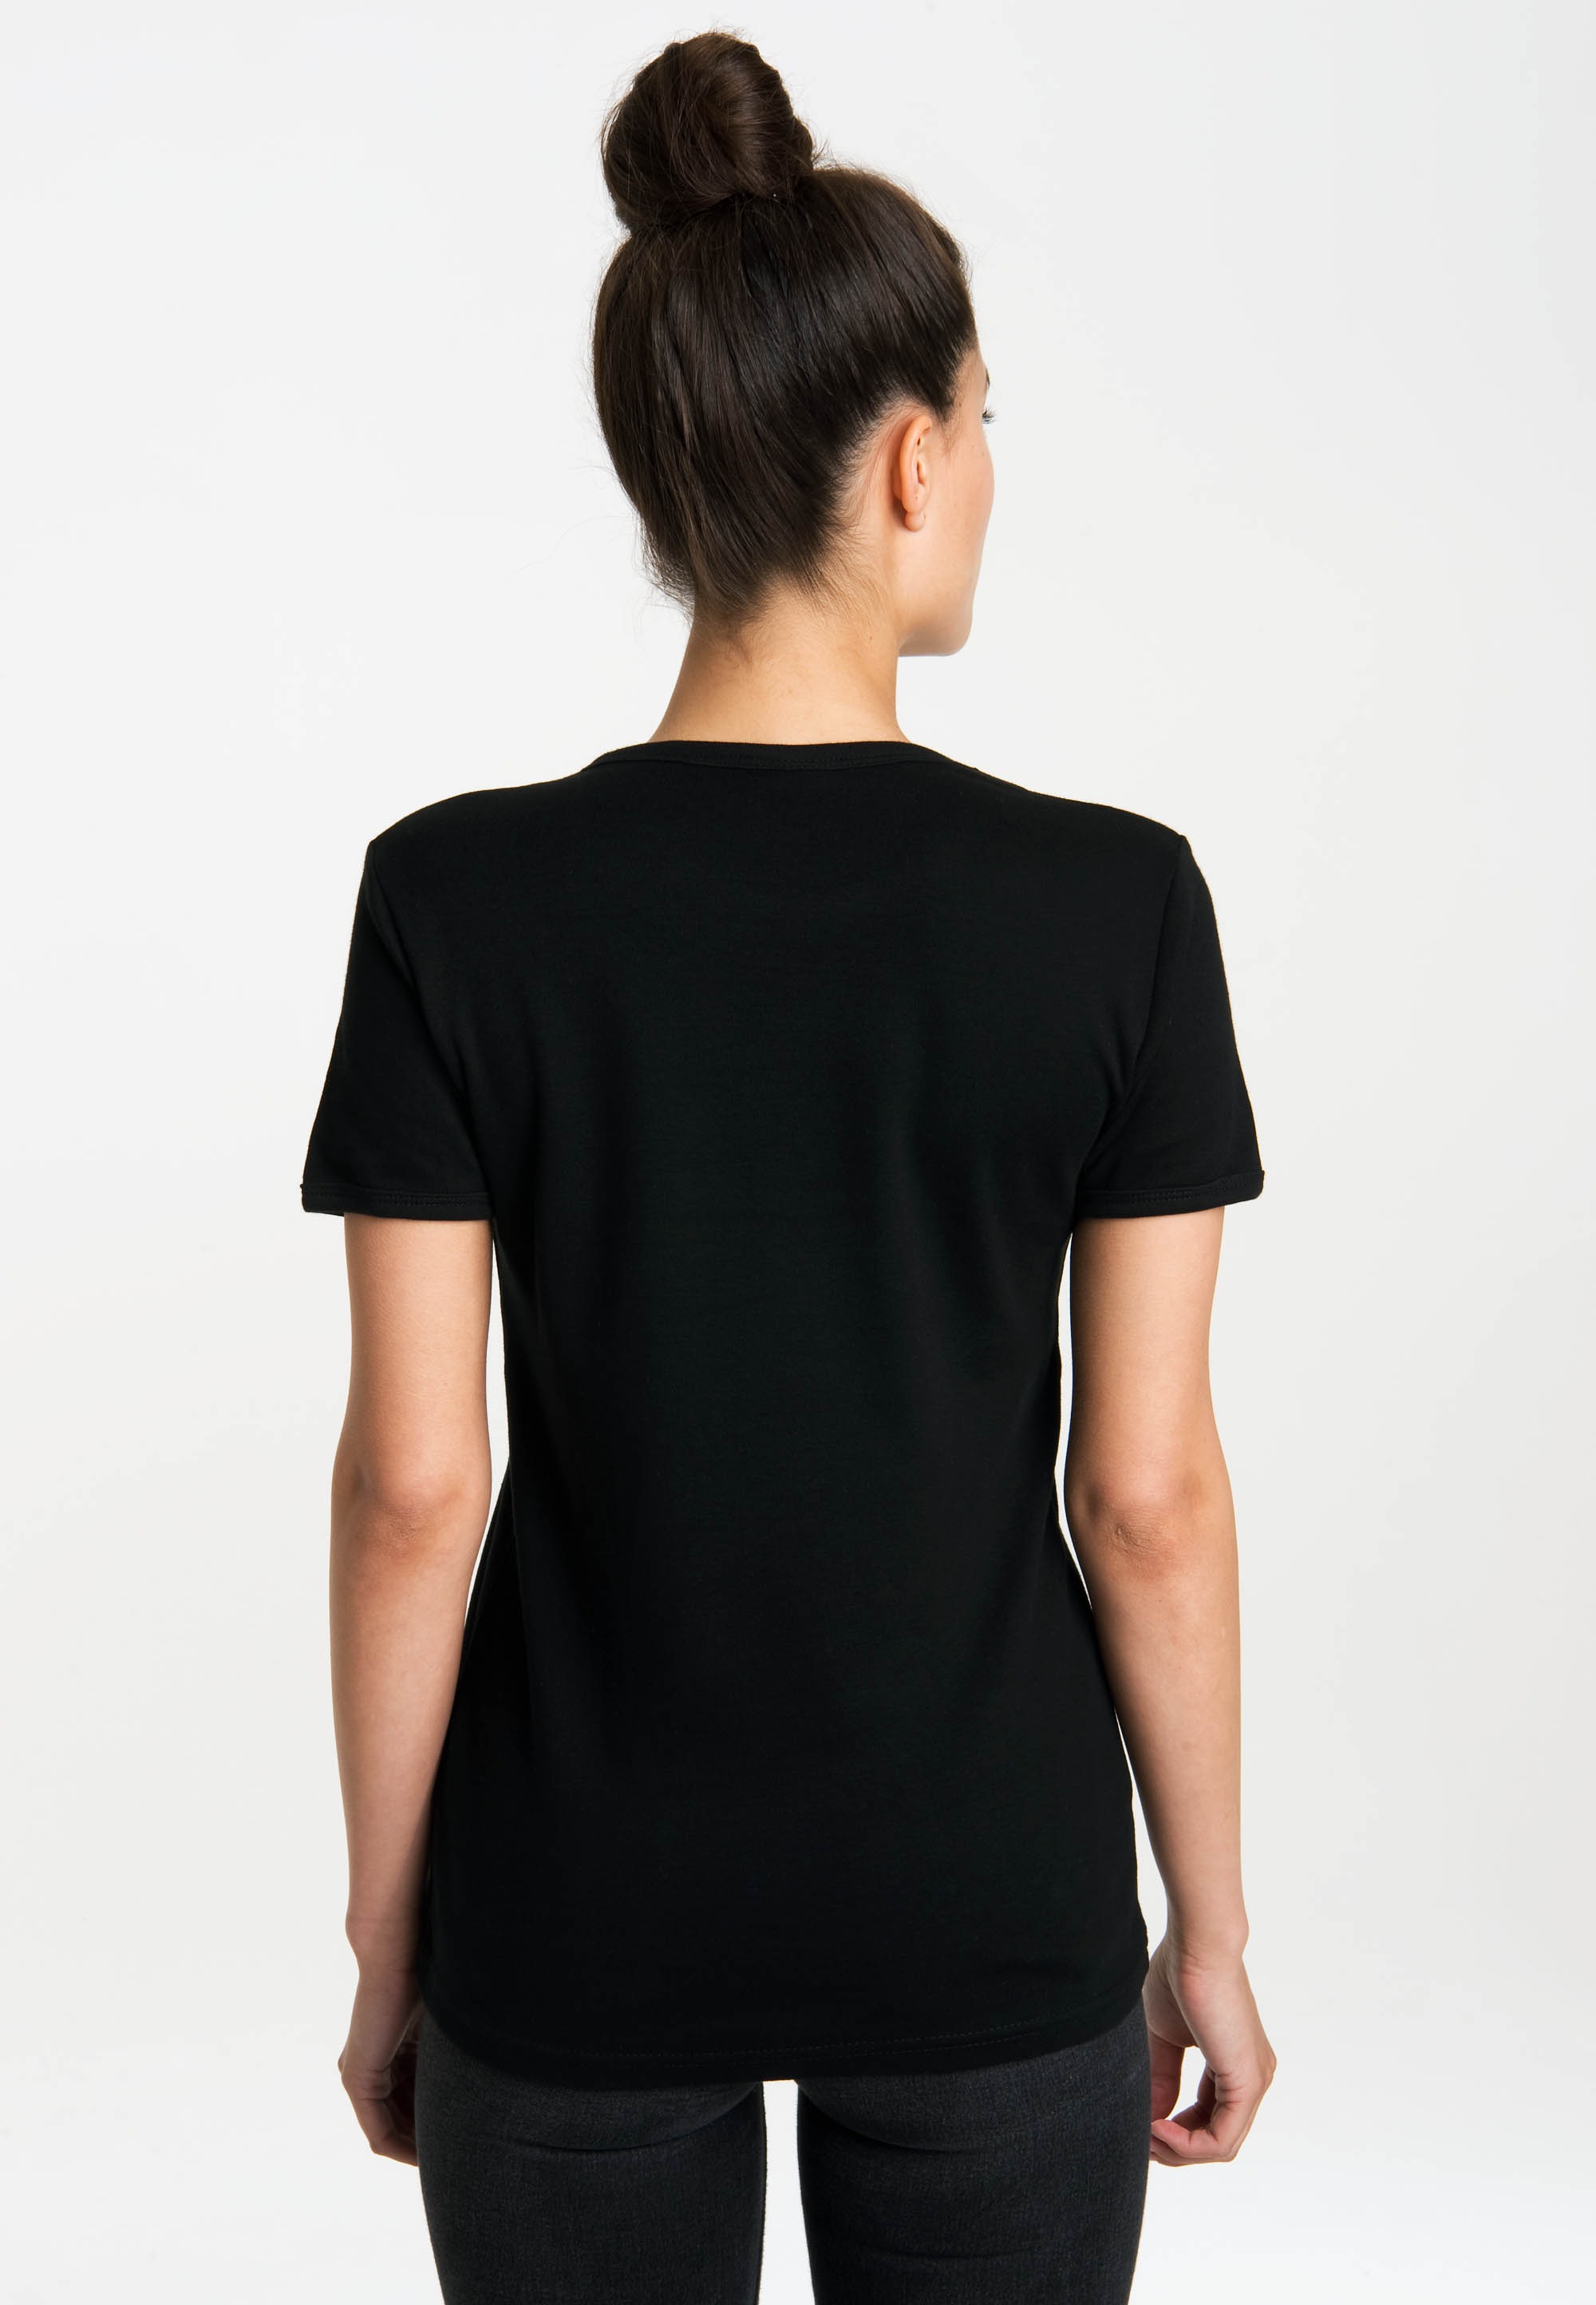 LOGOSHIRT T-Shirt »Two-Face – Flippin The Coin«, mit lizenziertem Originaldesign